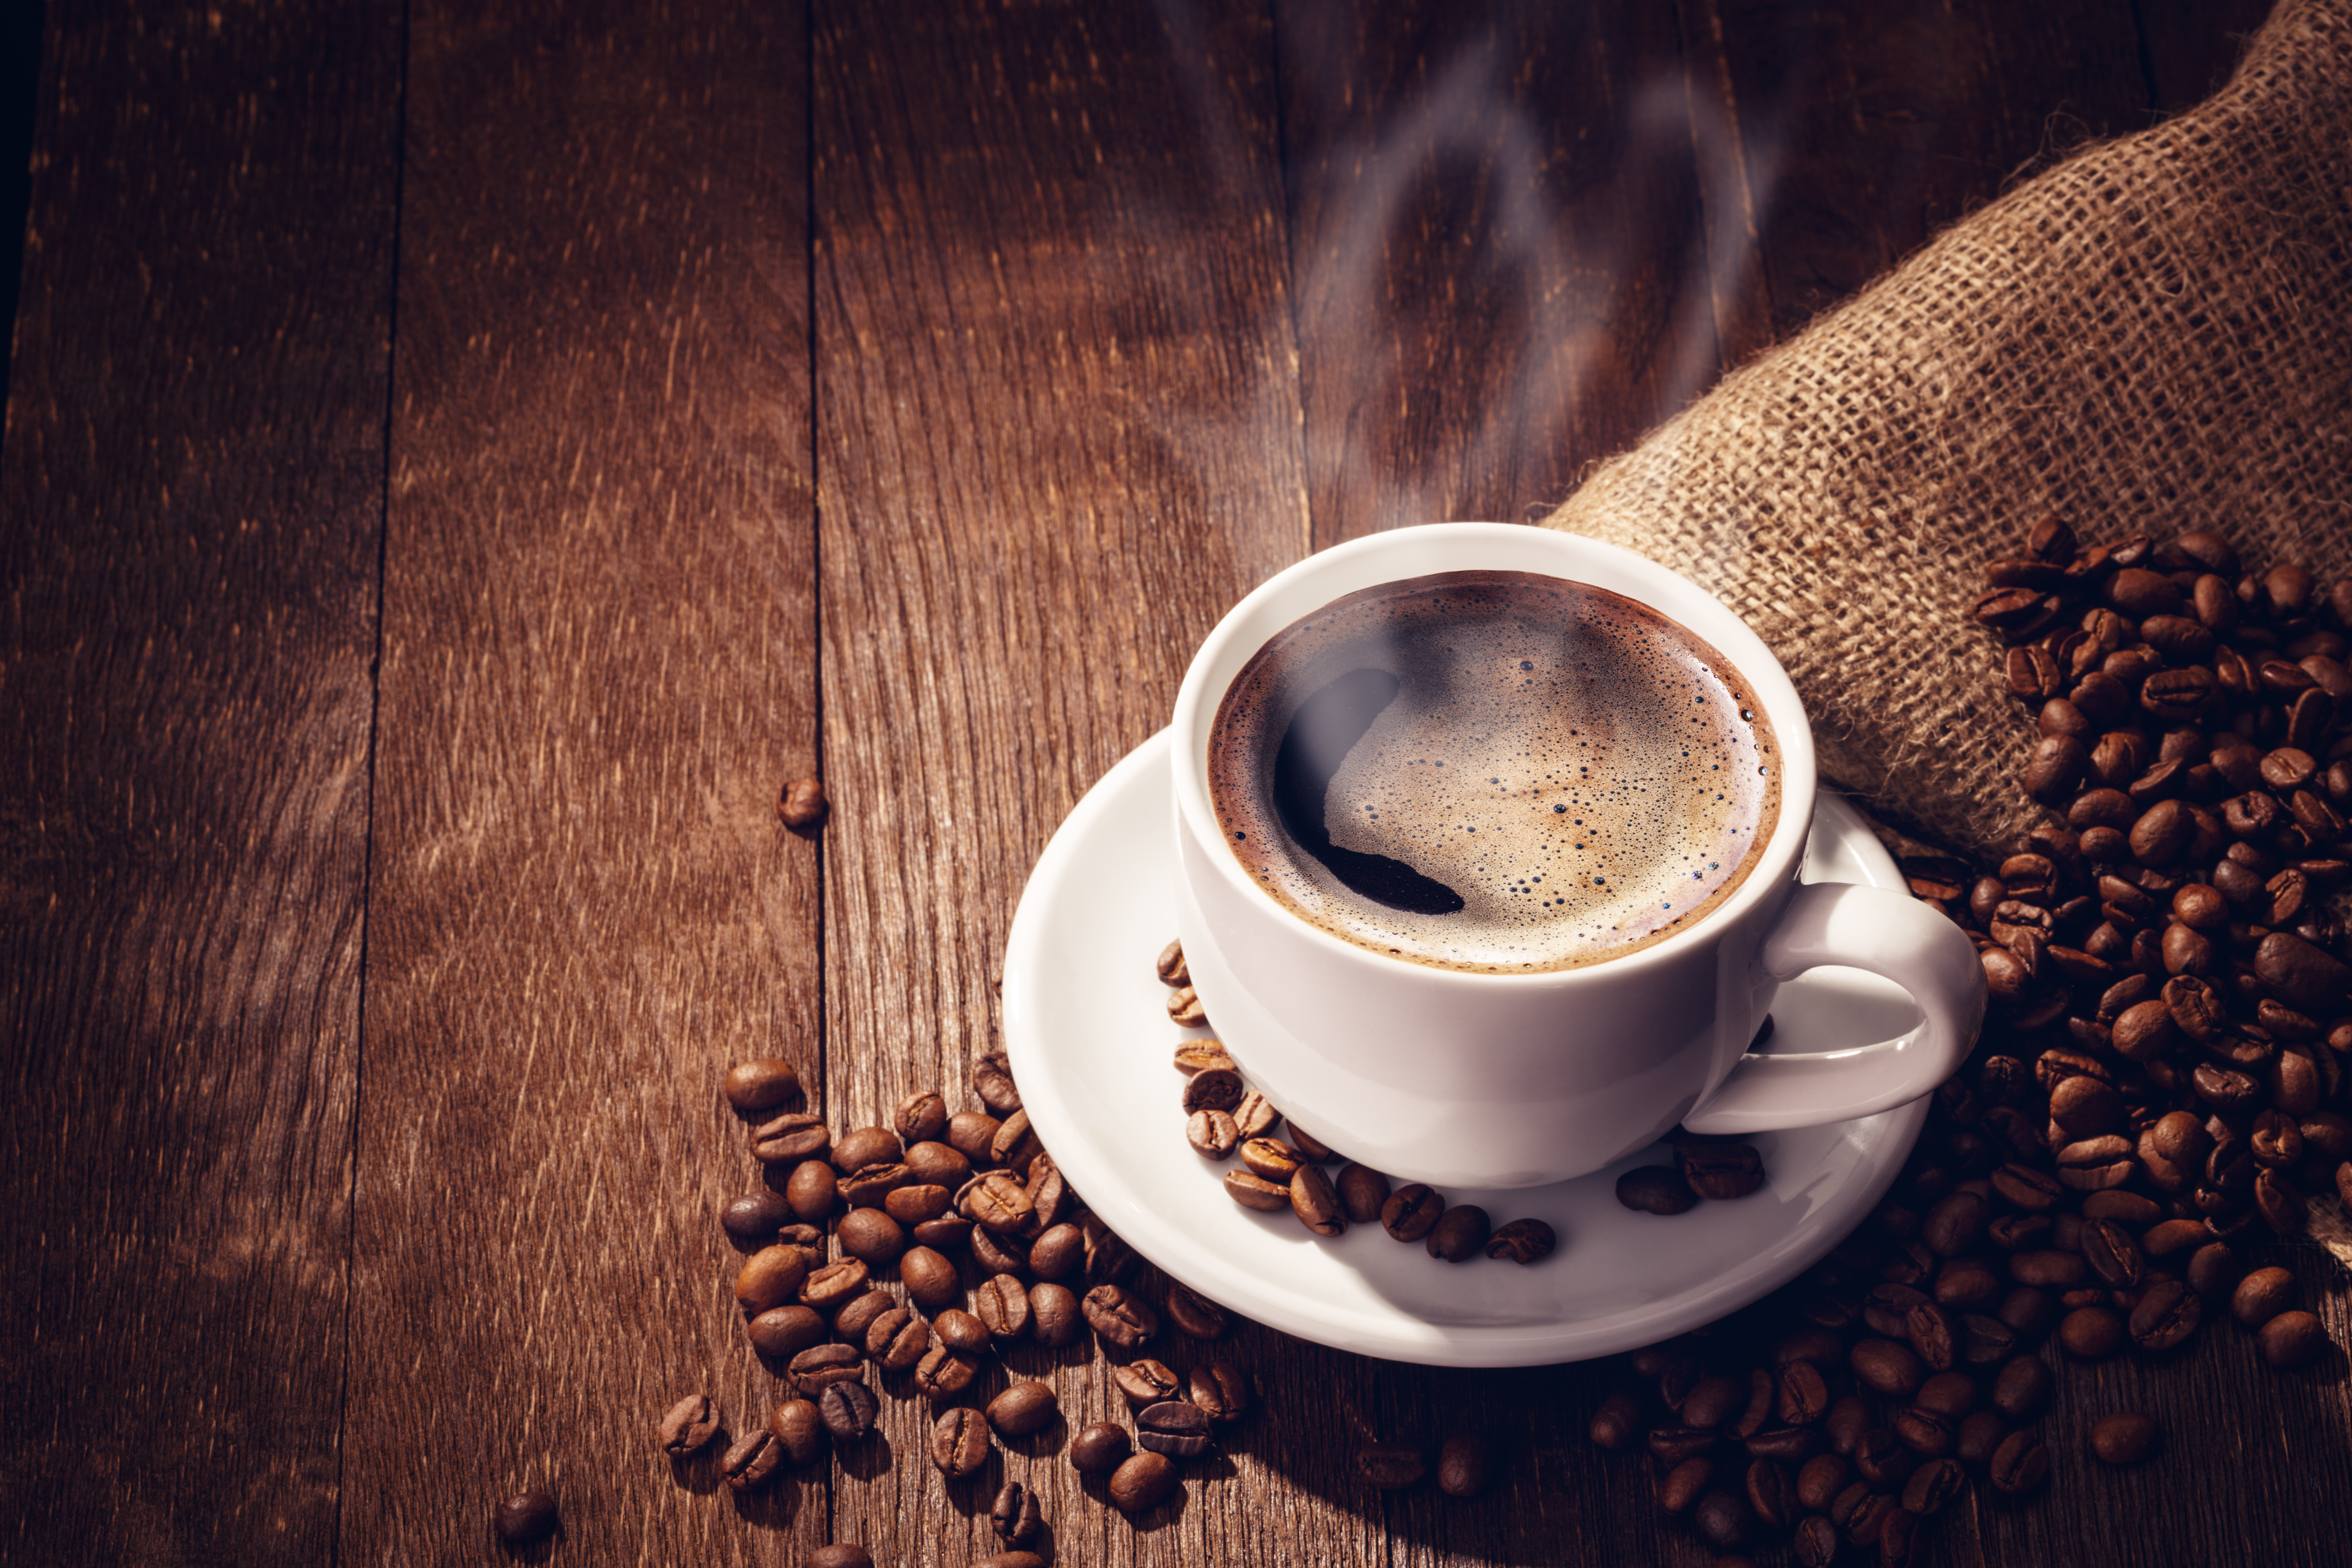 Le café est l’une des boissons les plus consommées dans le monde. Il a un rôle stimulant bien connu et permettrait aussi d’améliorer la mémoire. © dimakp, Adobe Stock